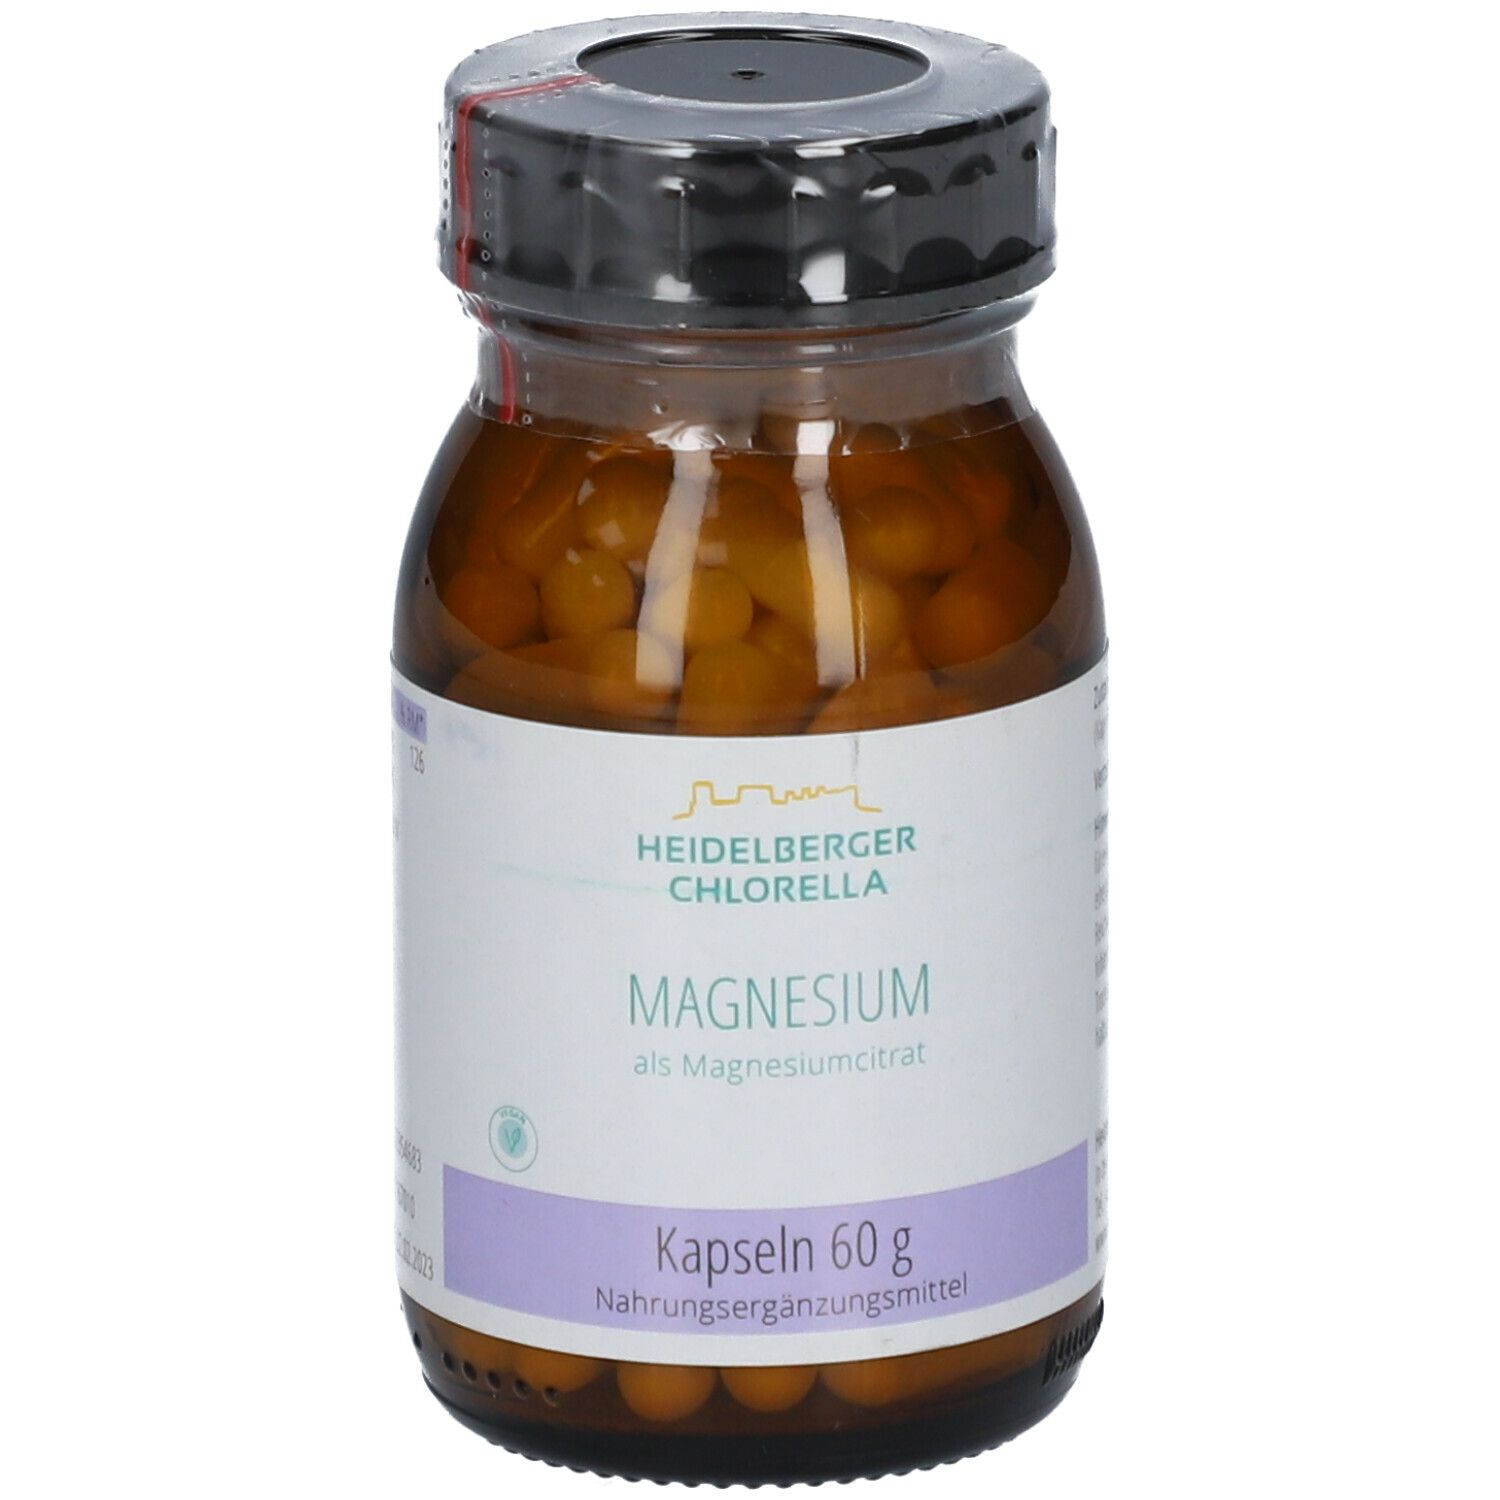 Heidelberger Chlorella® Magnesium als Magnesiumcitrat